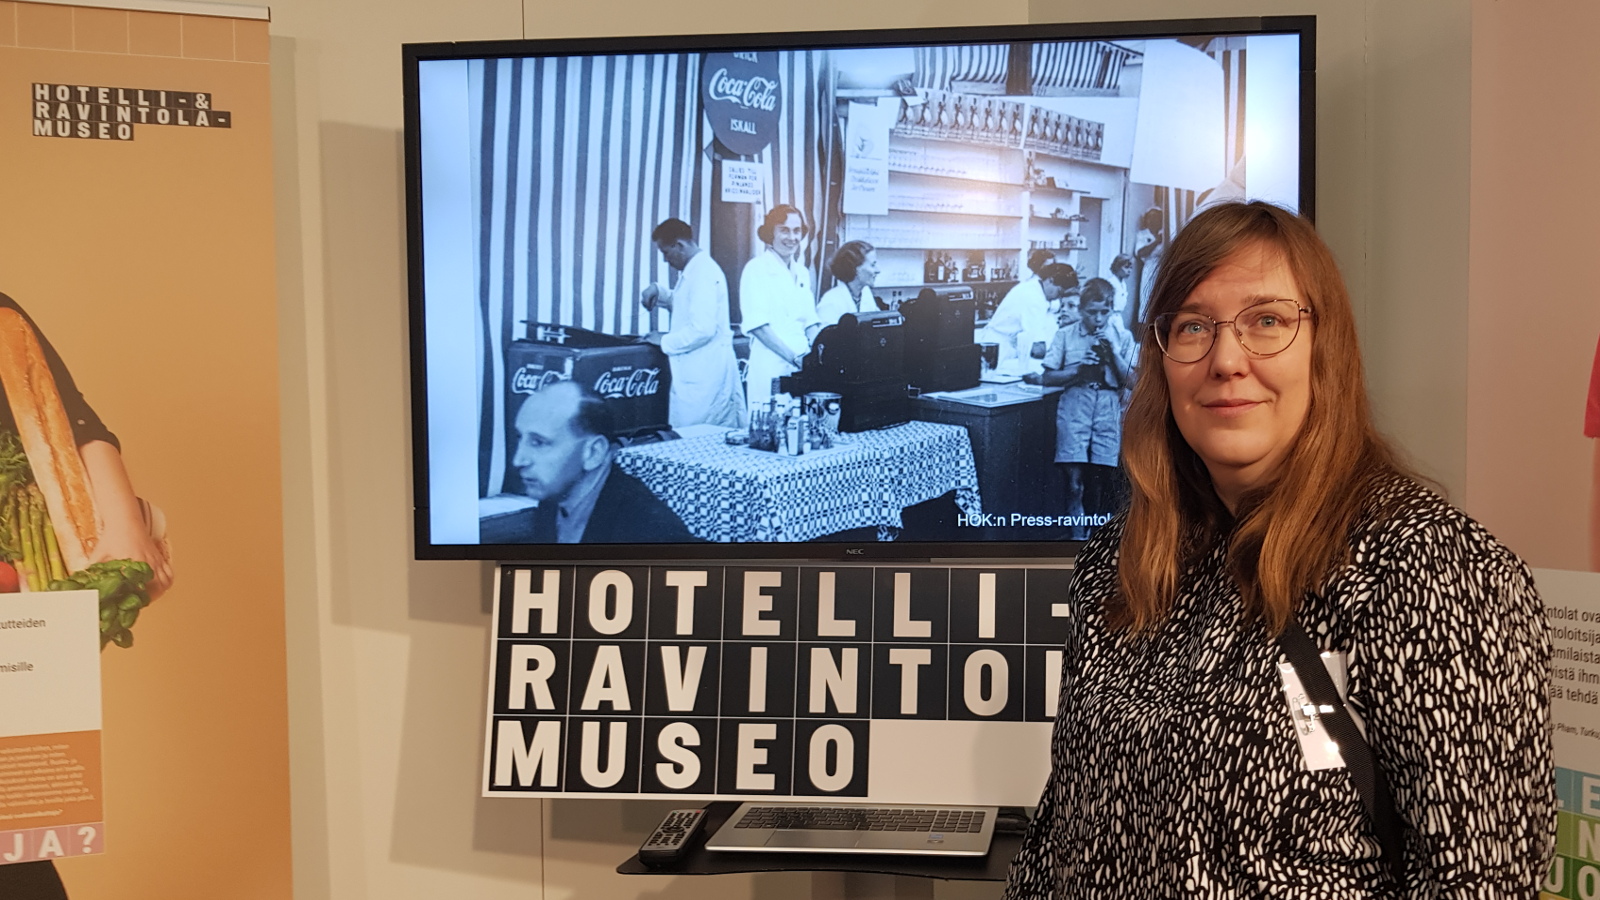 Kuvassa on oikealla x musta-valkopilkullisessa puvussa ja taustalla on musta-valkoinen kuva sekä teksti Hotelli-ja ravintolamuseo. 